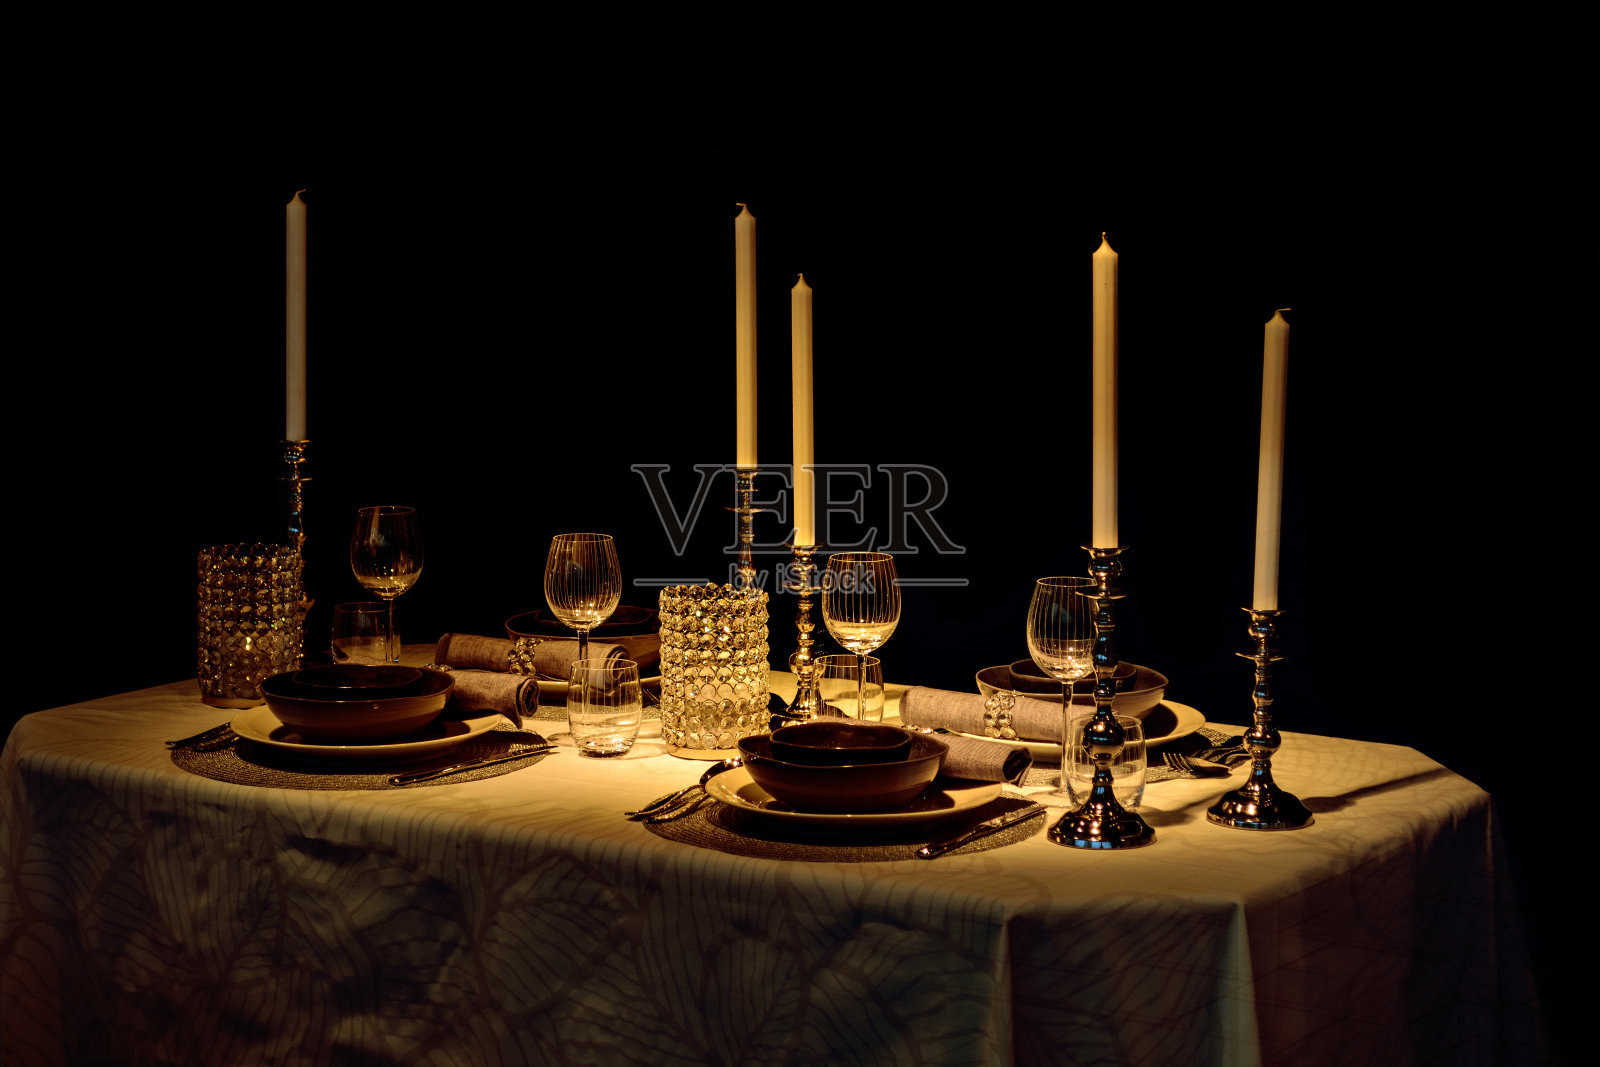 用蜡烛装饰的桌子照片摄影图片